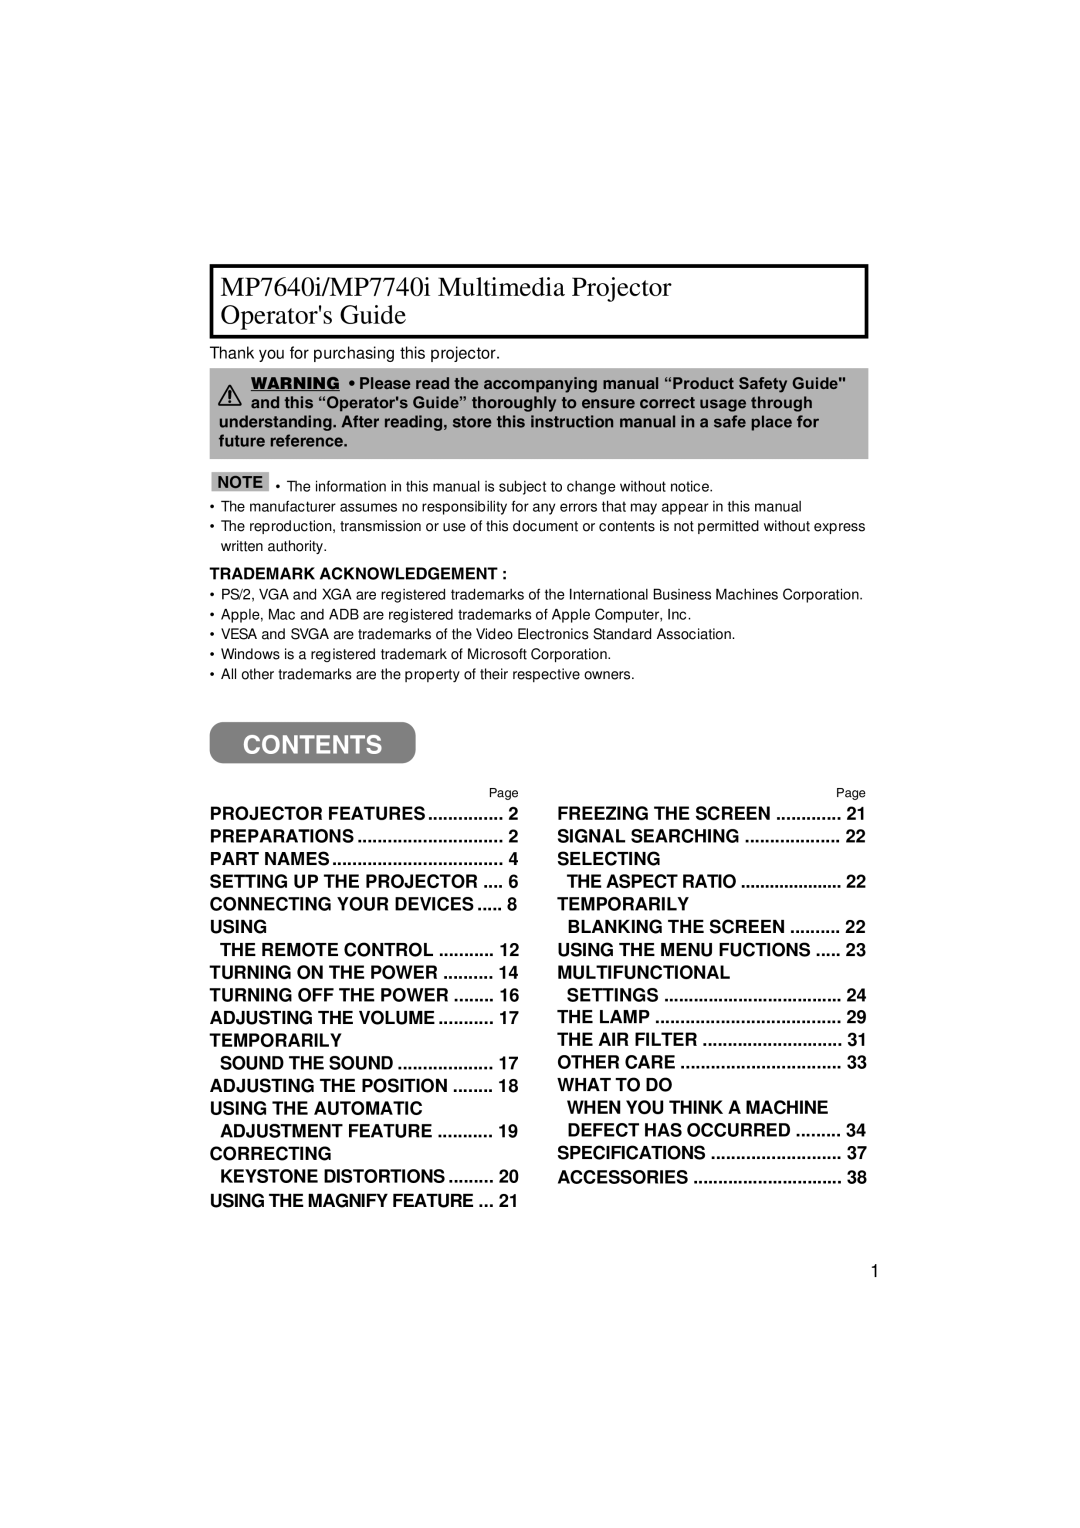 3M manual Contents, MP7640i/MP7740i Multimedia Projector Operators Guide 